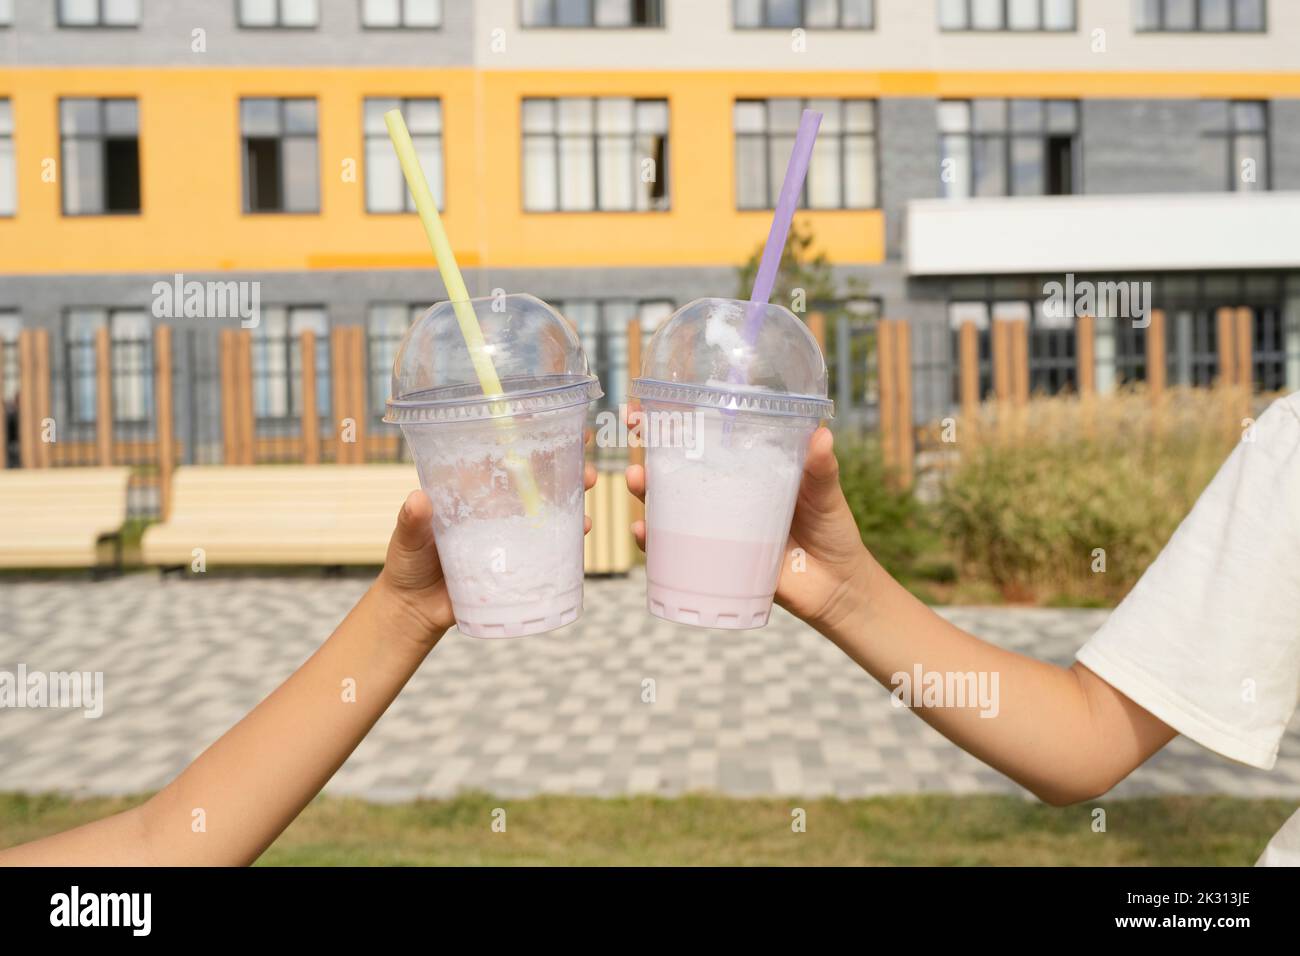 Mani di ragazze che tengono tazze usa e getta di milkshakes di fronte alla costruzione il giorno di sole Foto Stock